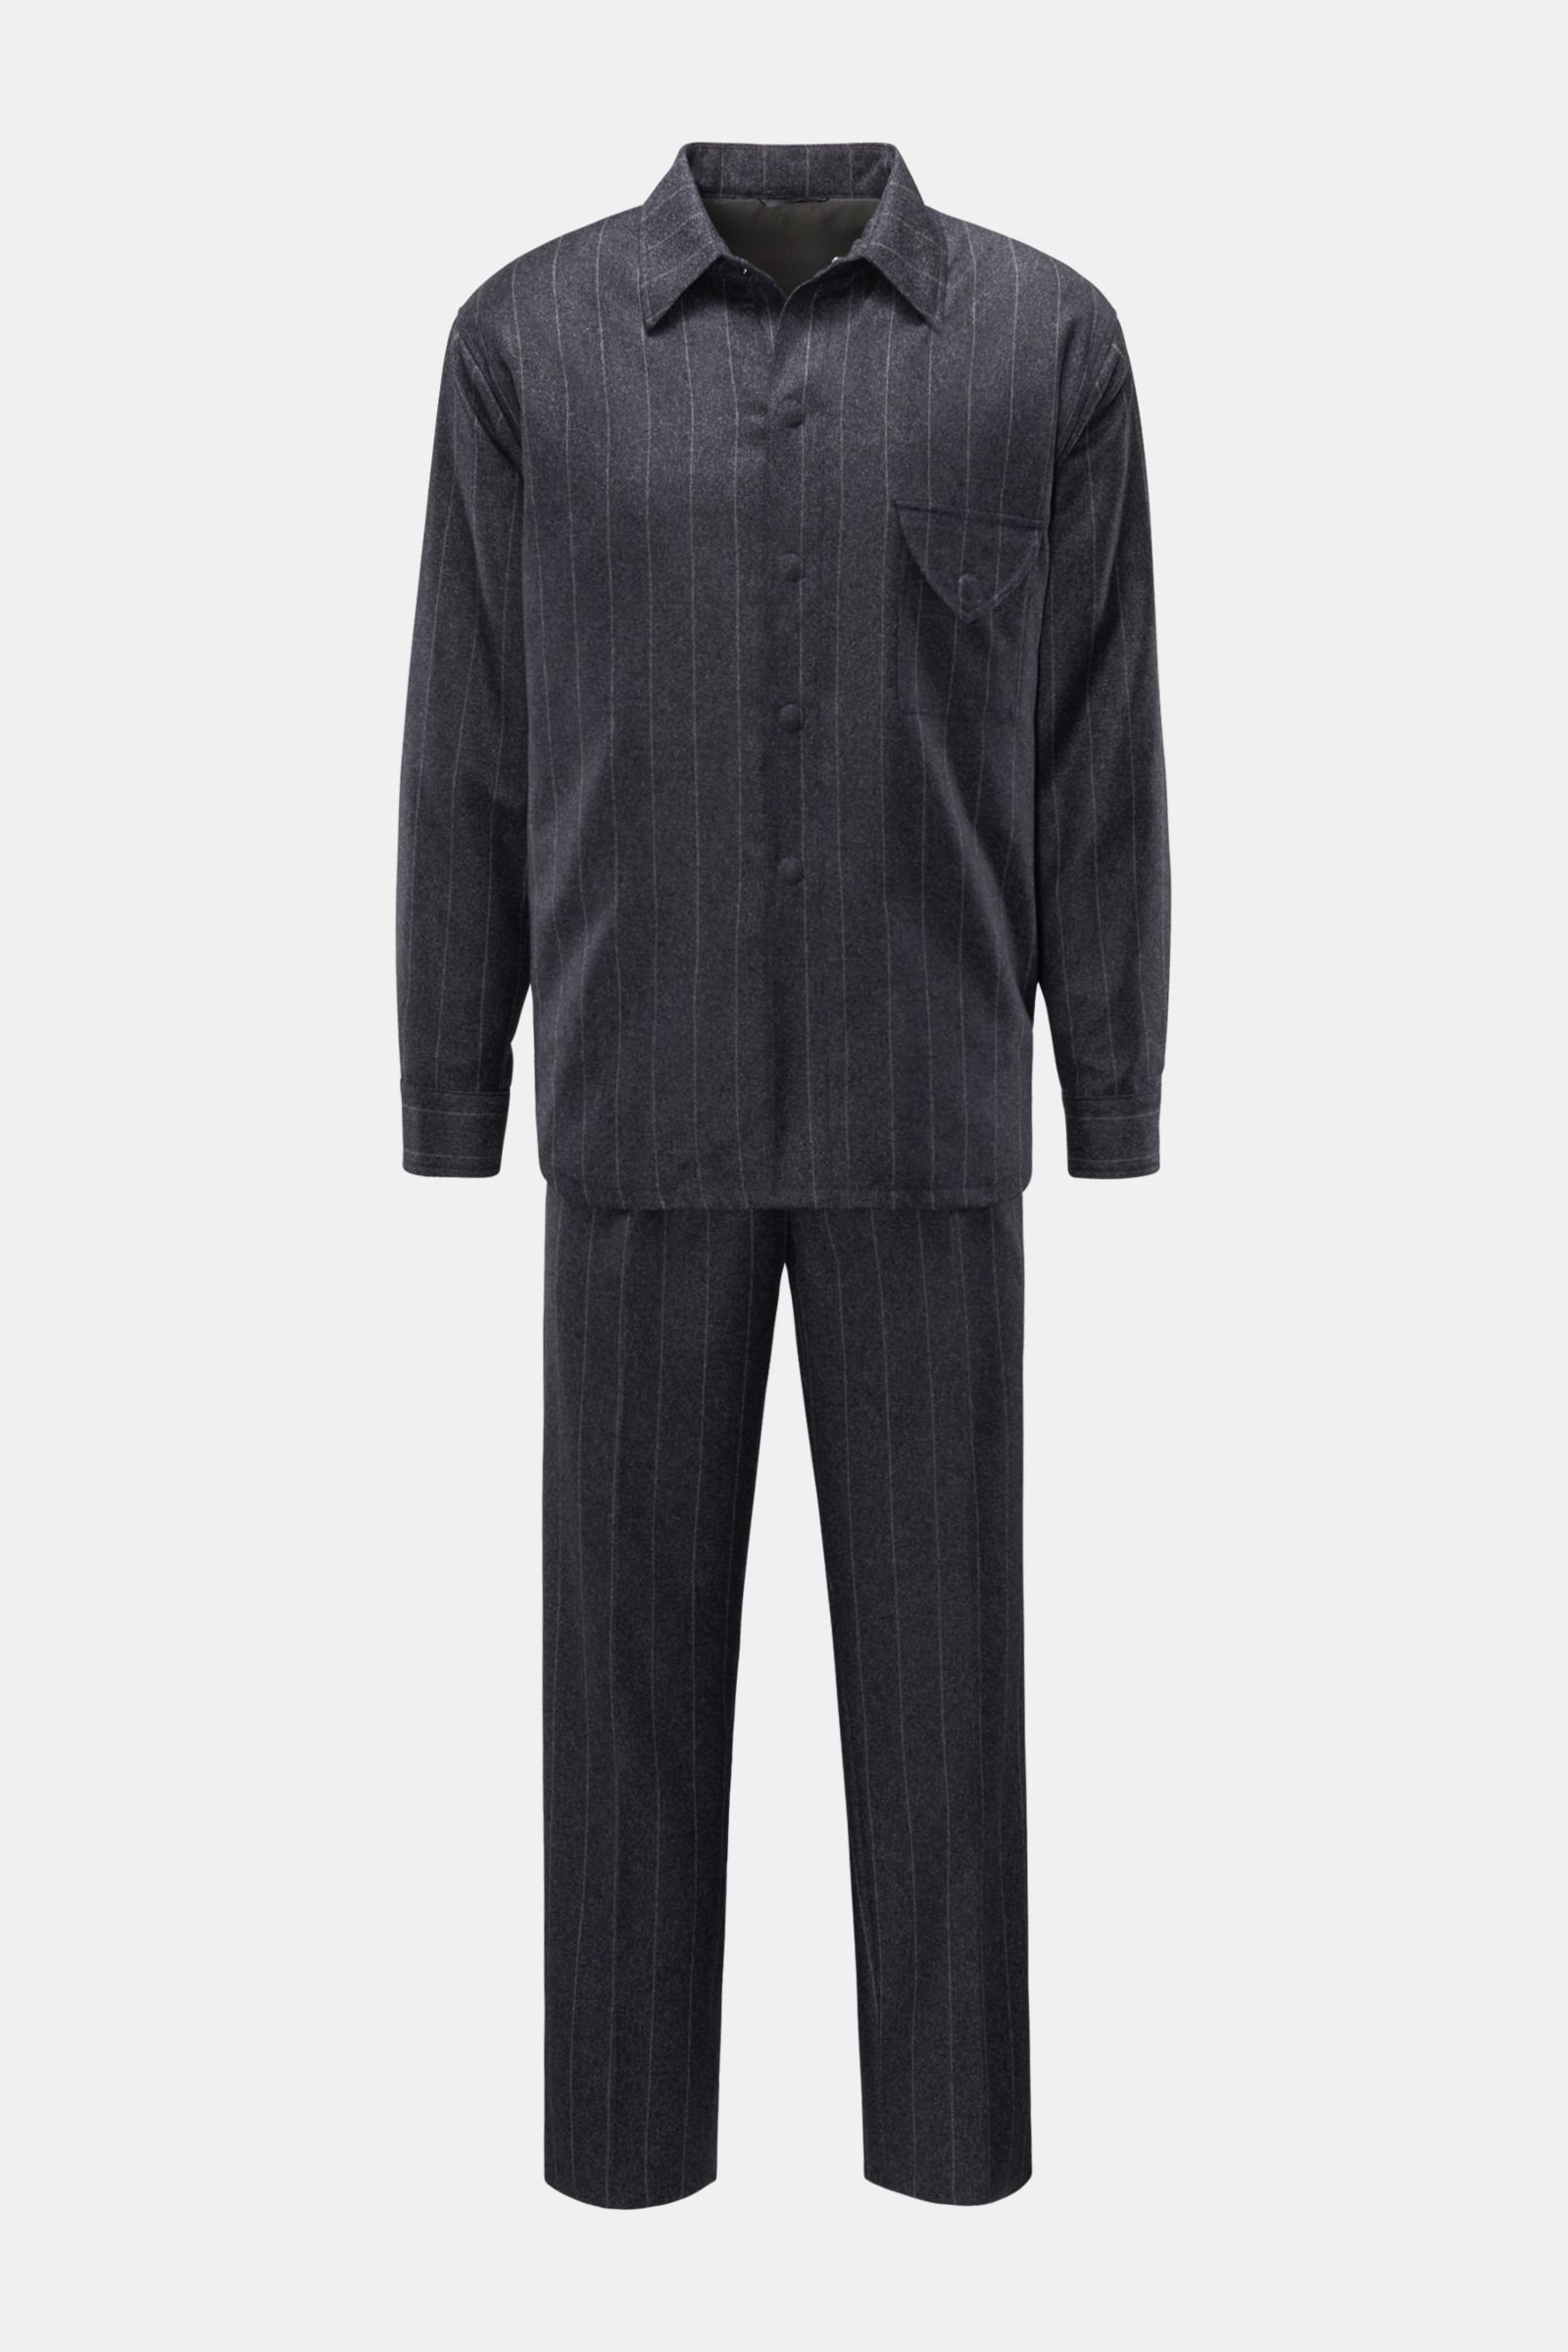 Suit anthracite/dark grey striped